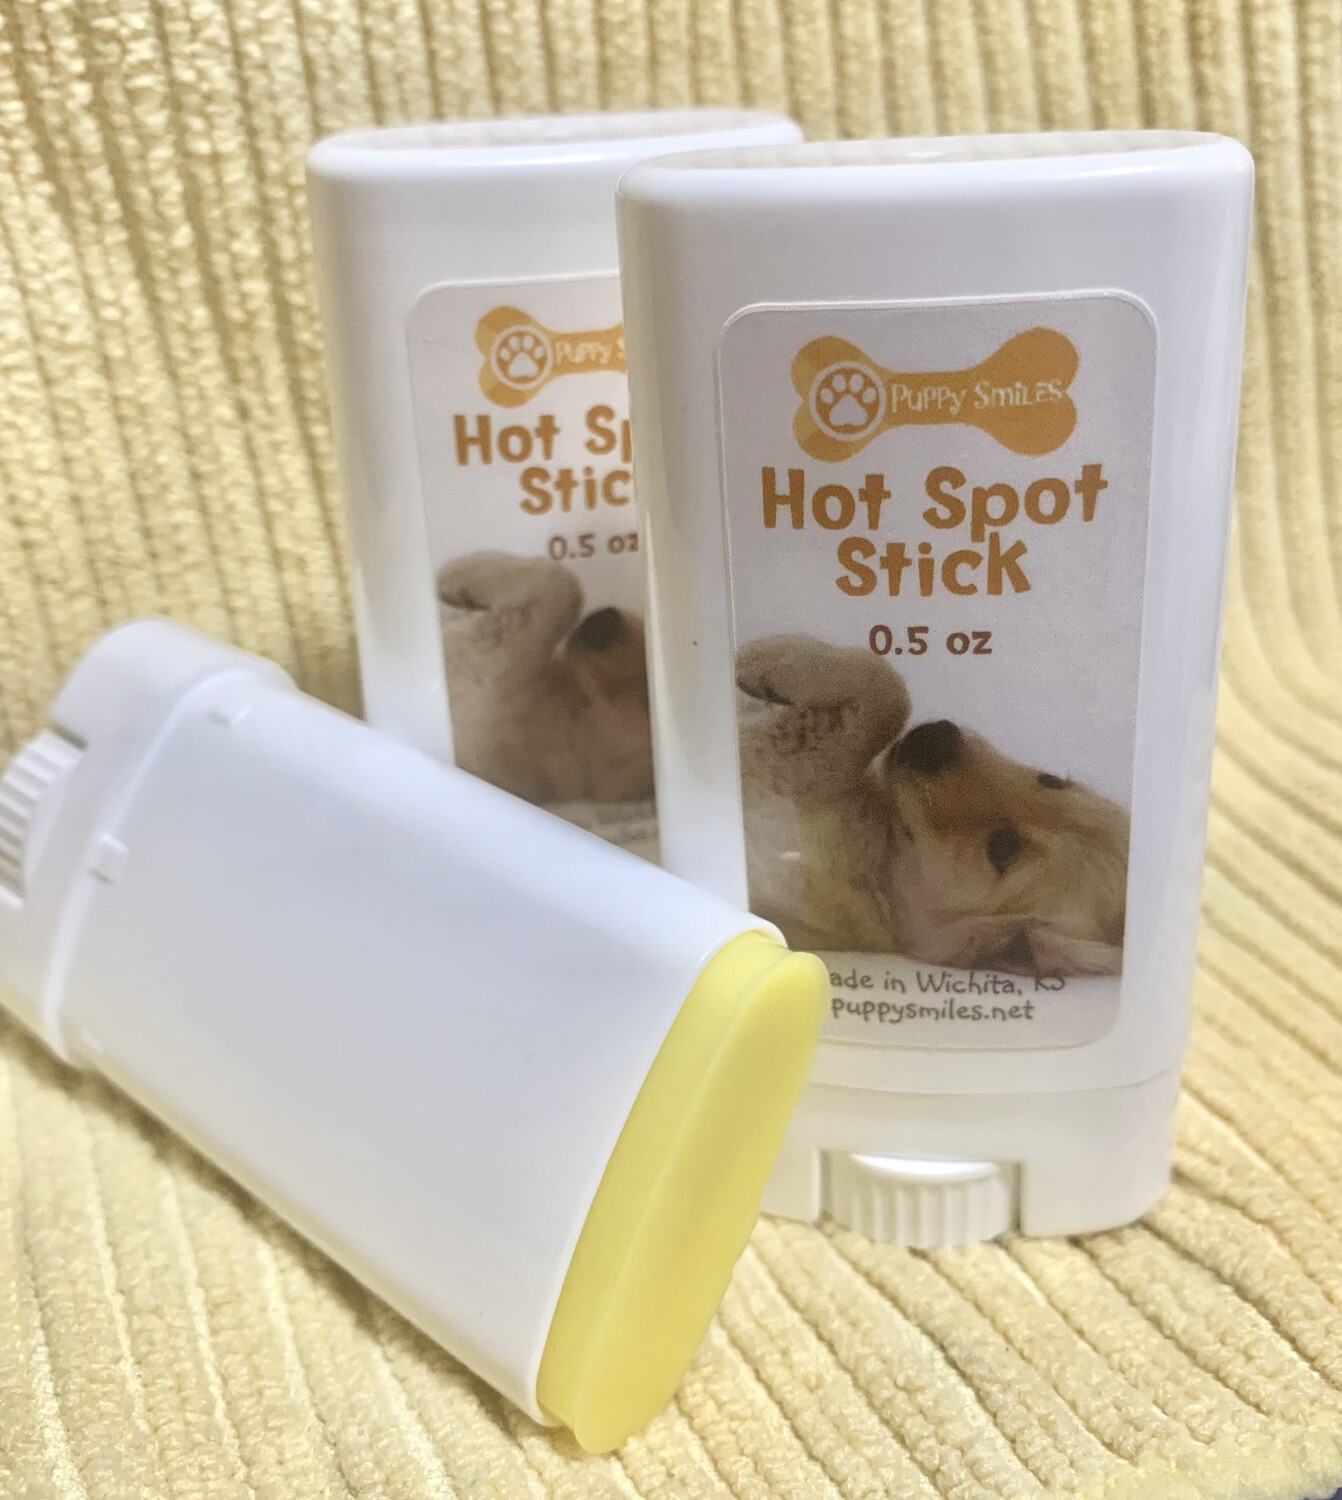 Hot Spot Stick